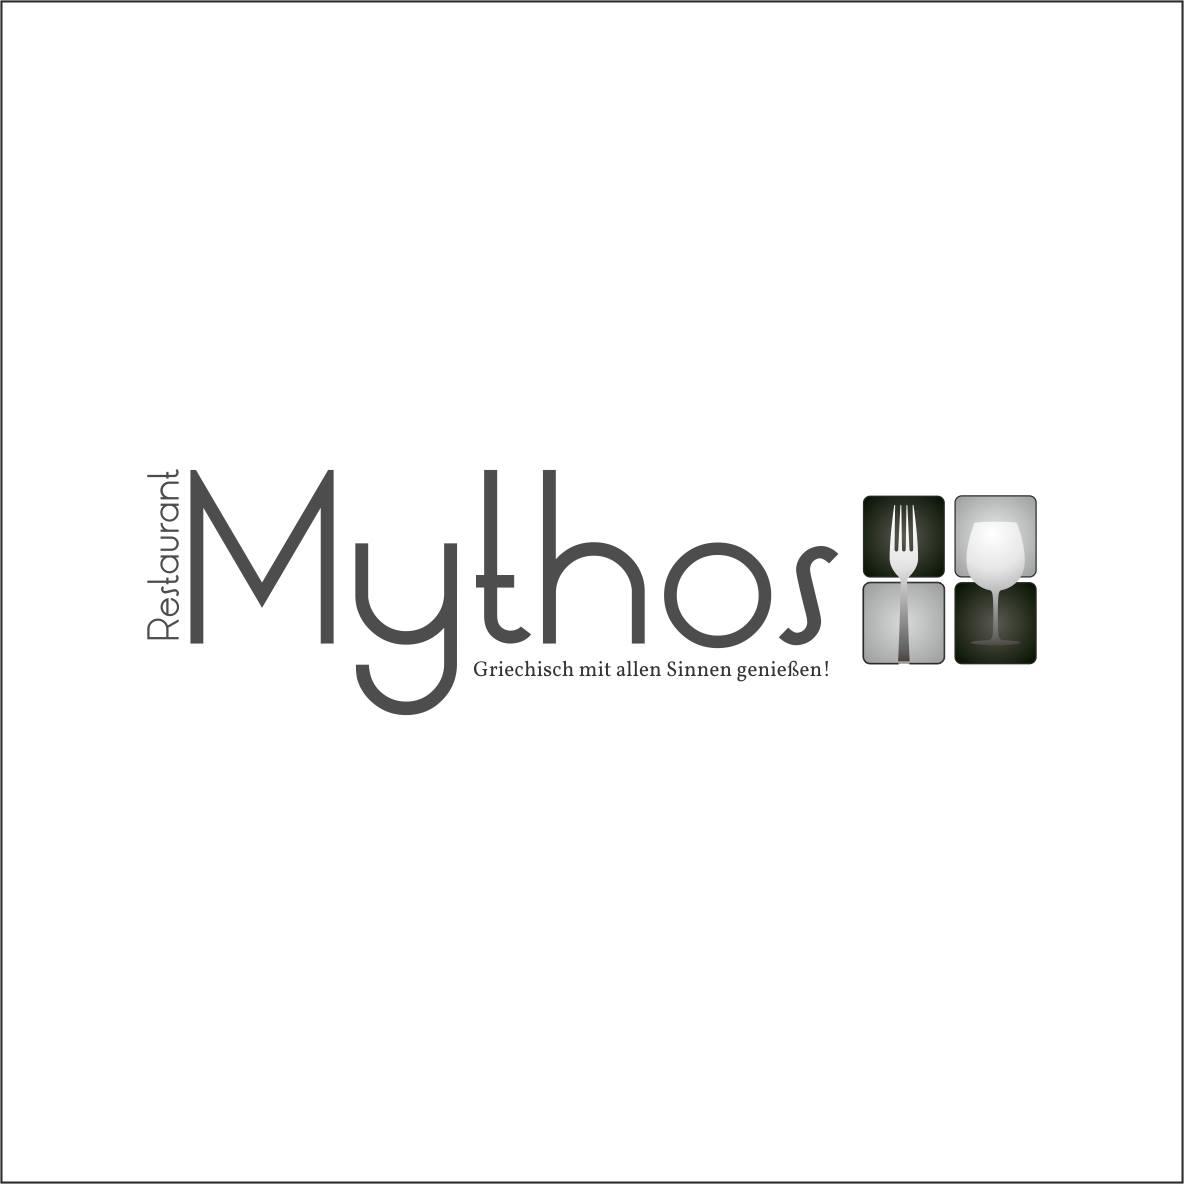 Restaurant Mythos in Nürnberg - Logo